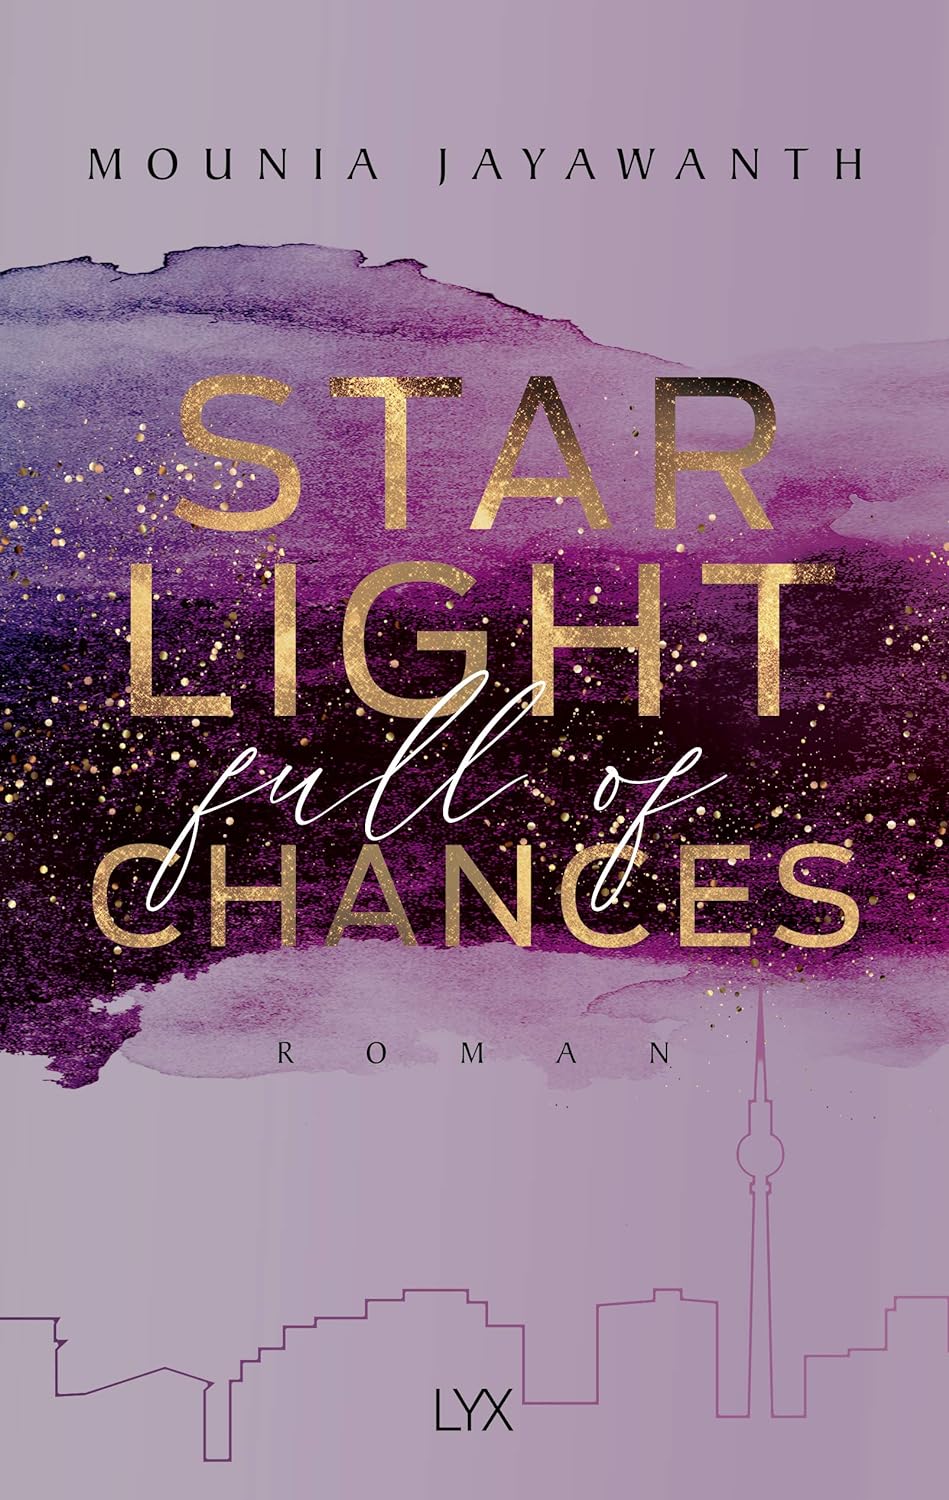 Mounia Jayawanth - Starlight Full Of Chances